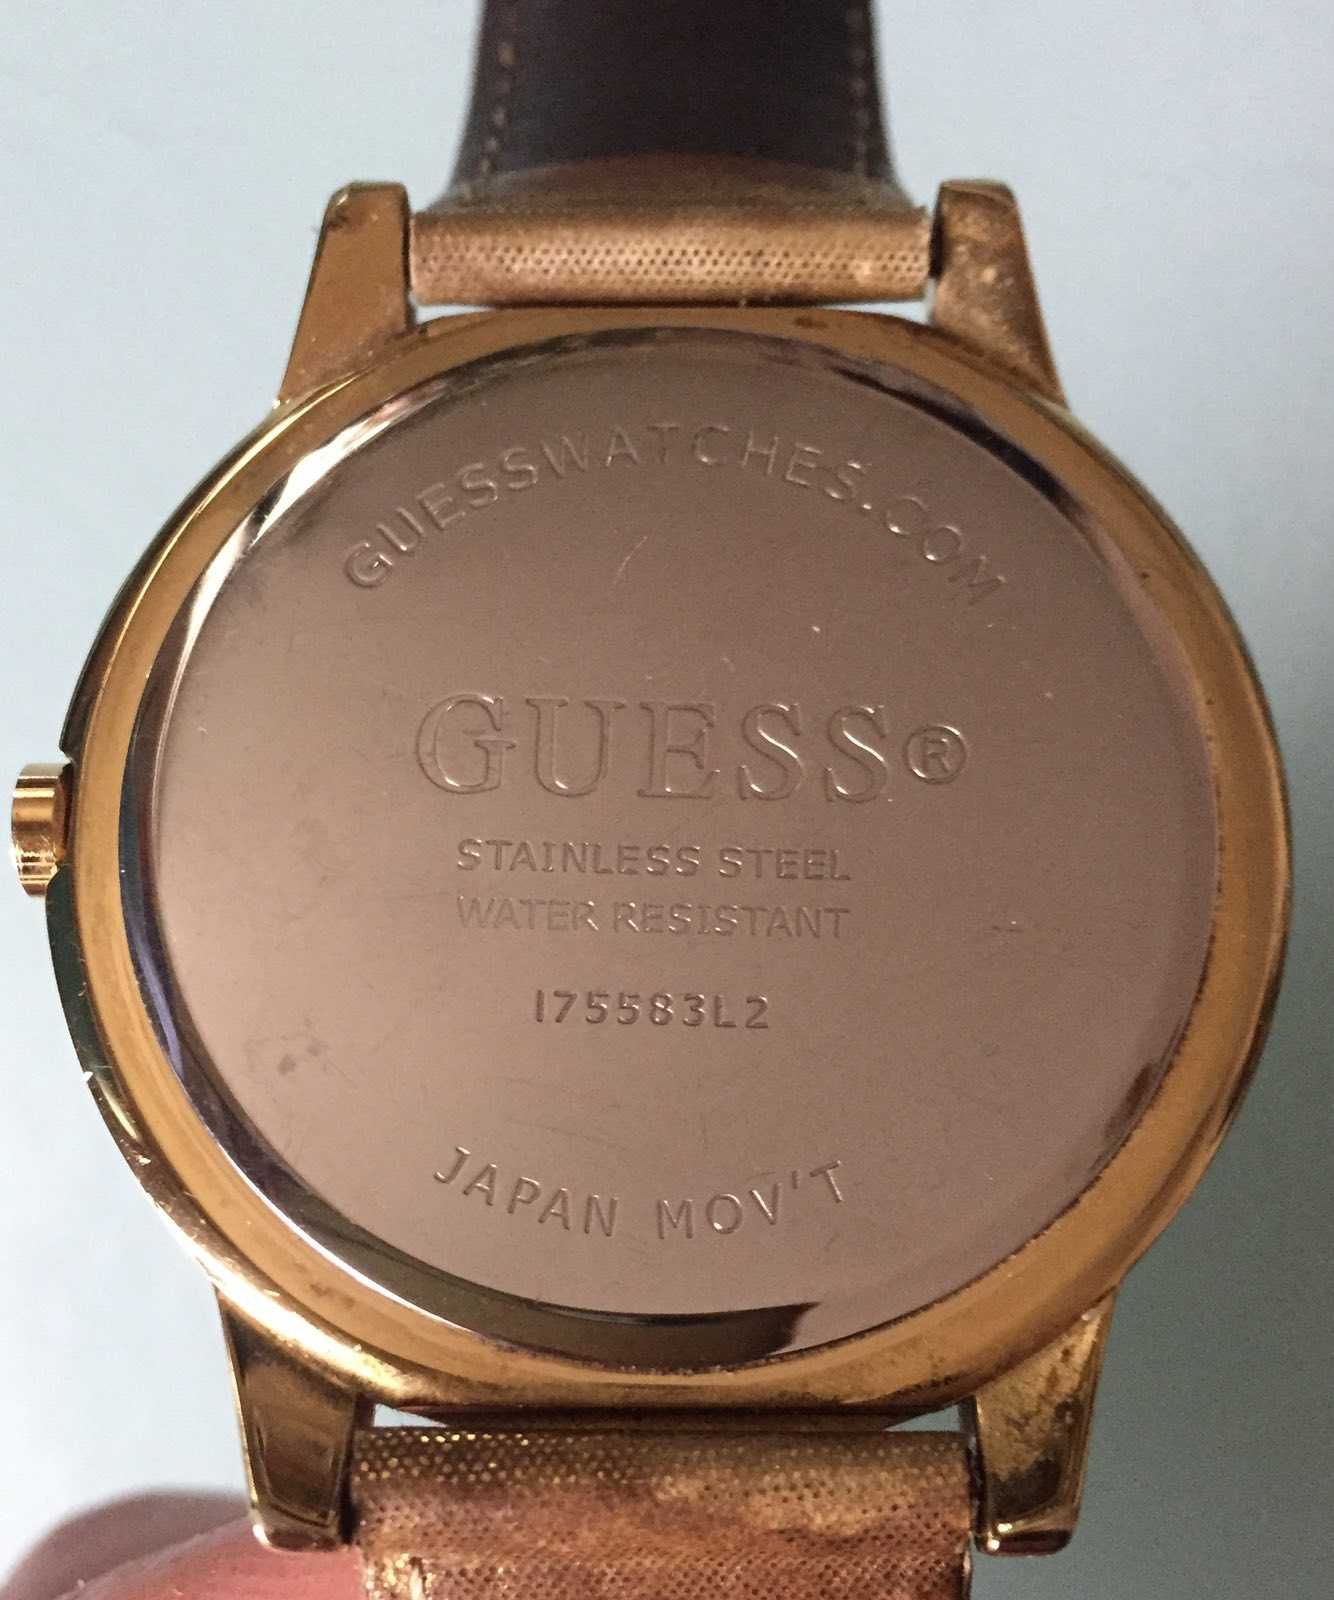 Женские часы GUESS Оригинал Japan Mov's